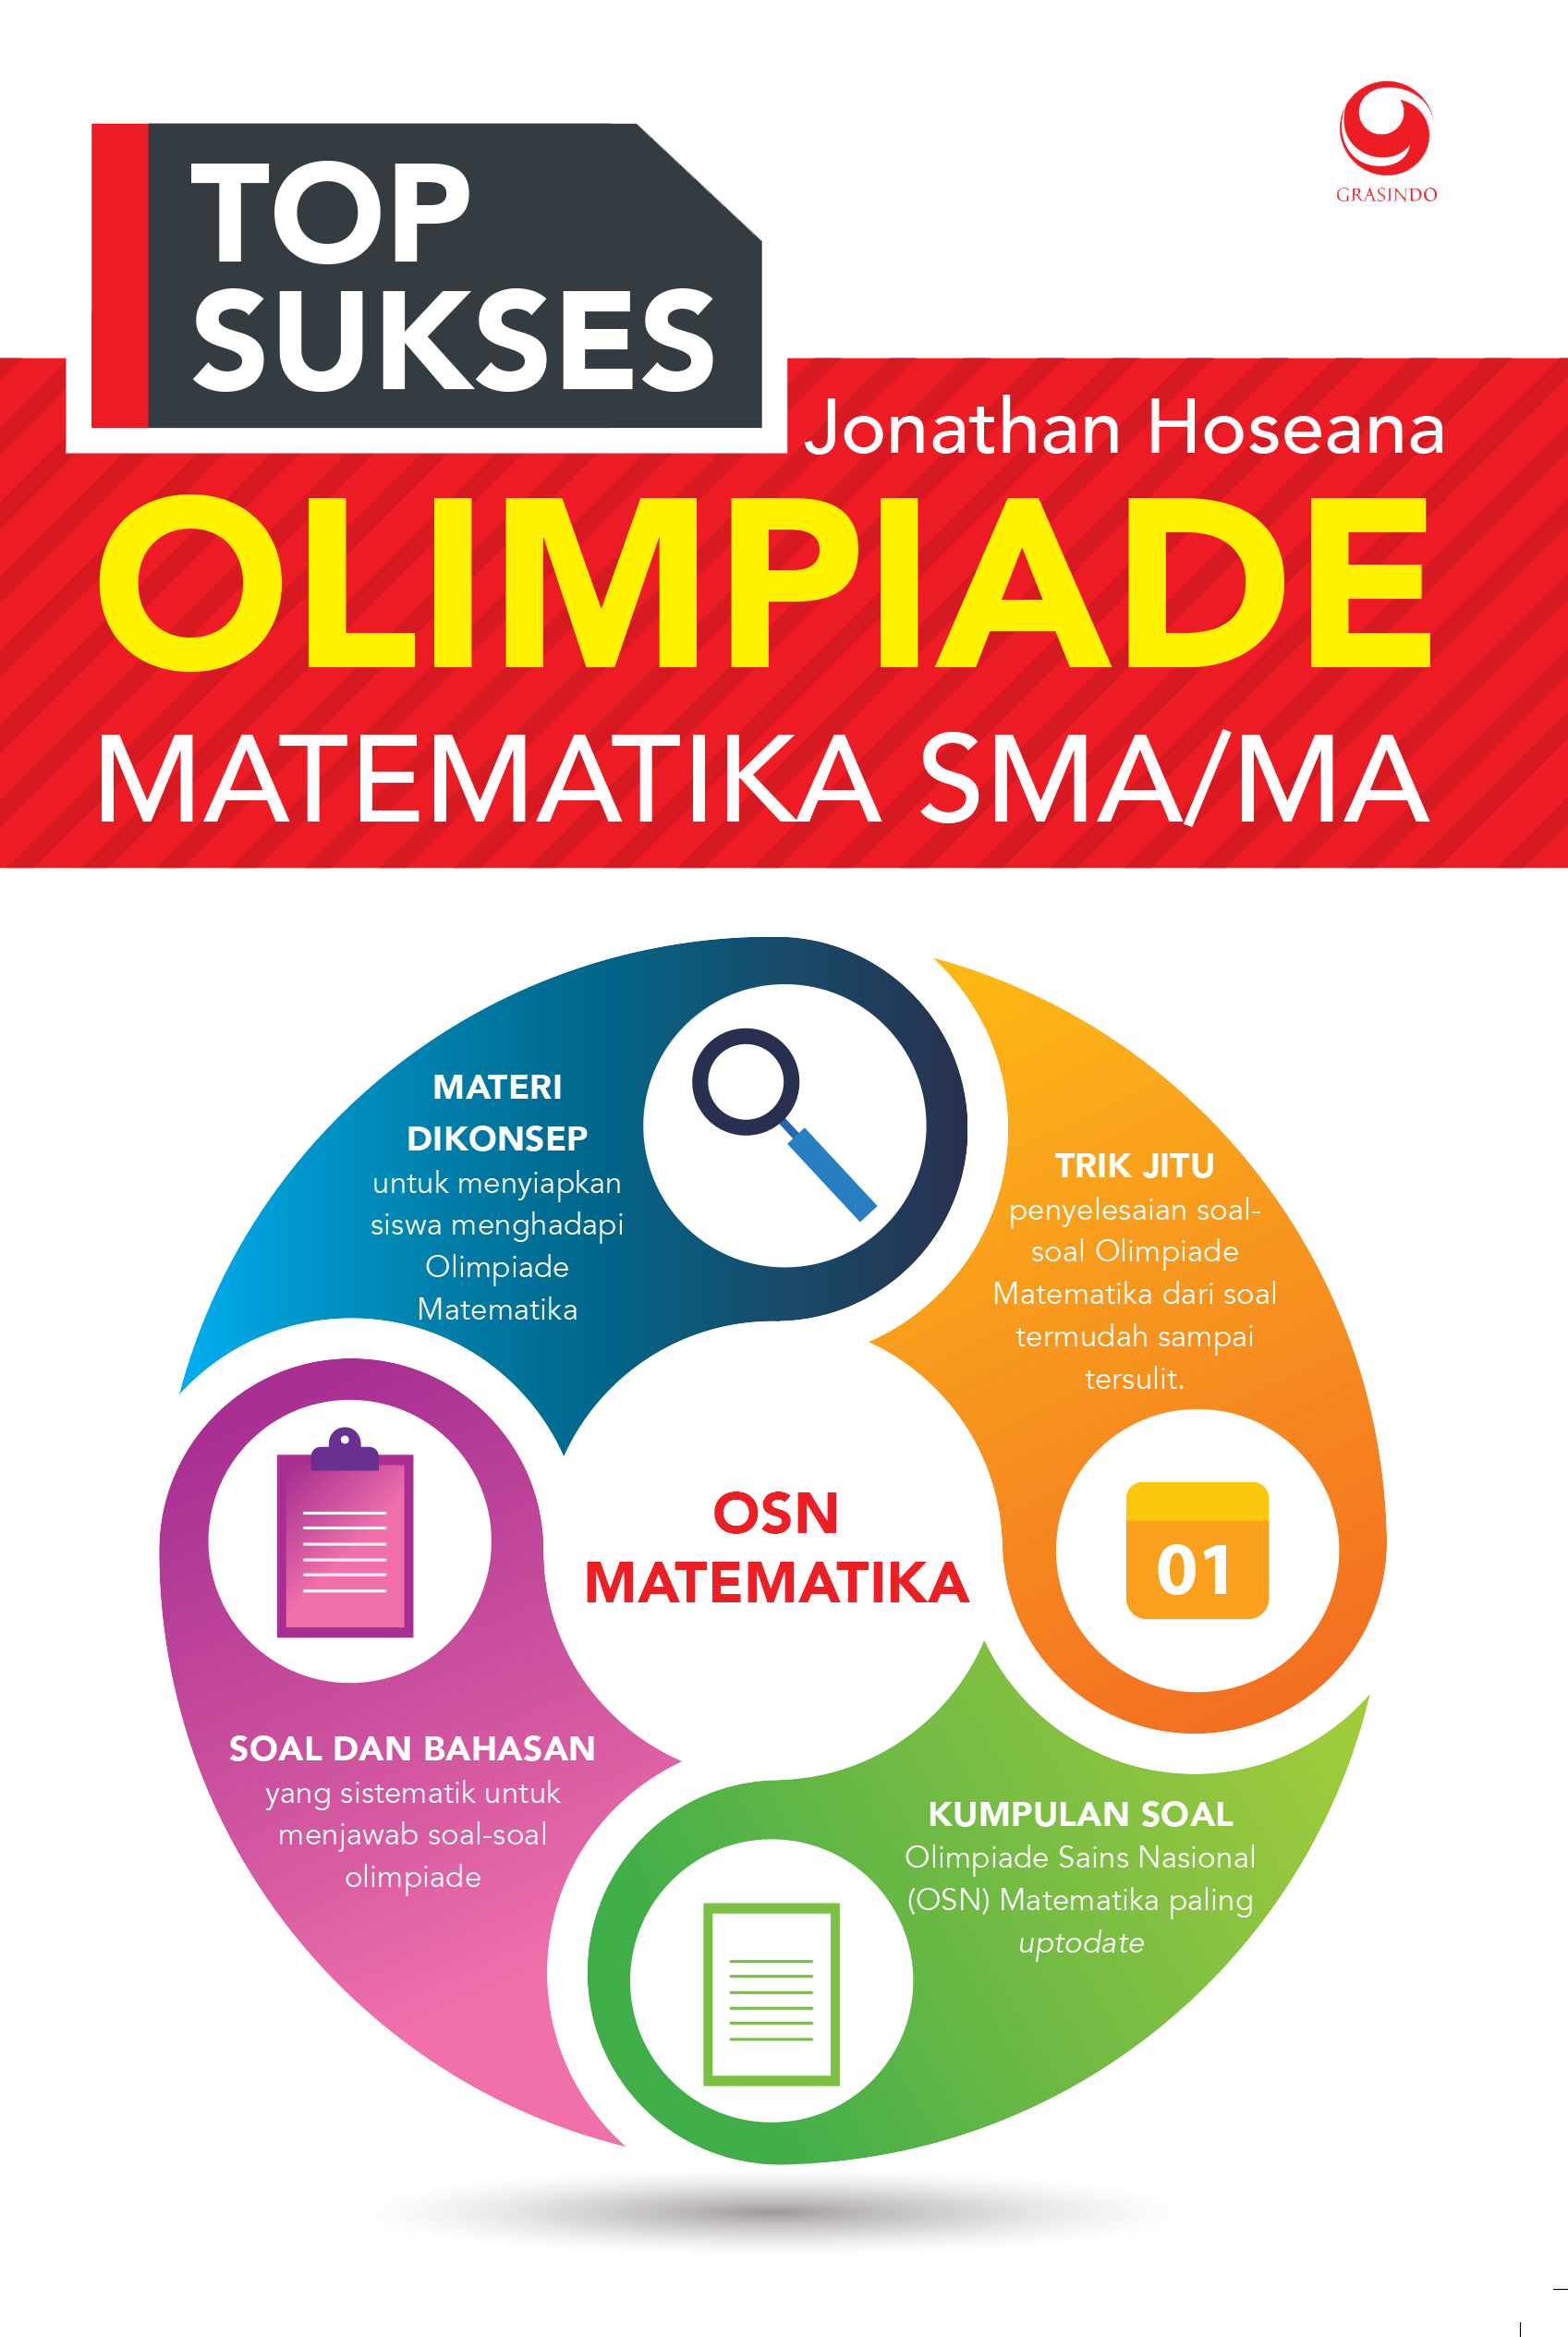 Top Sukses Olimpiade Matematika SMA/MA